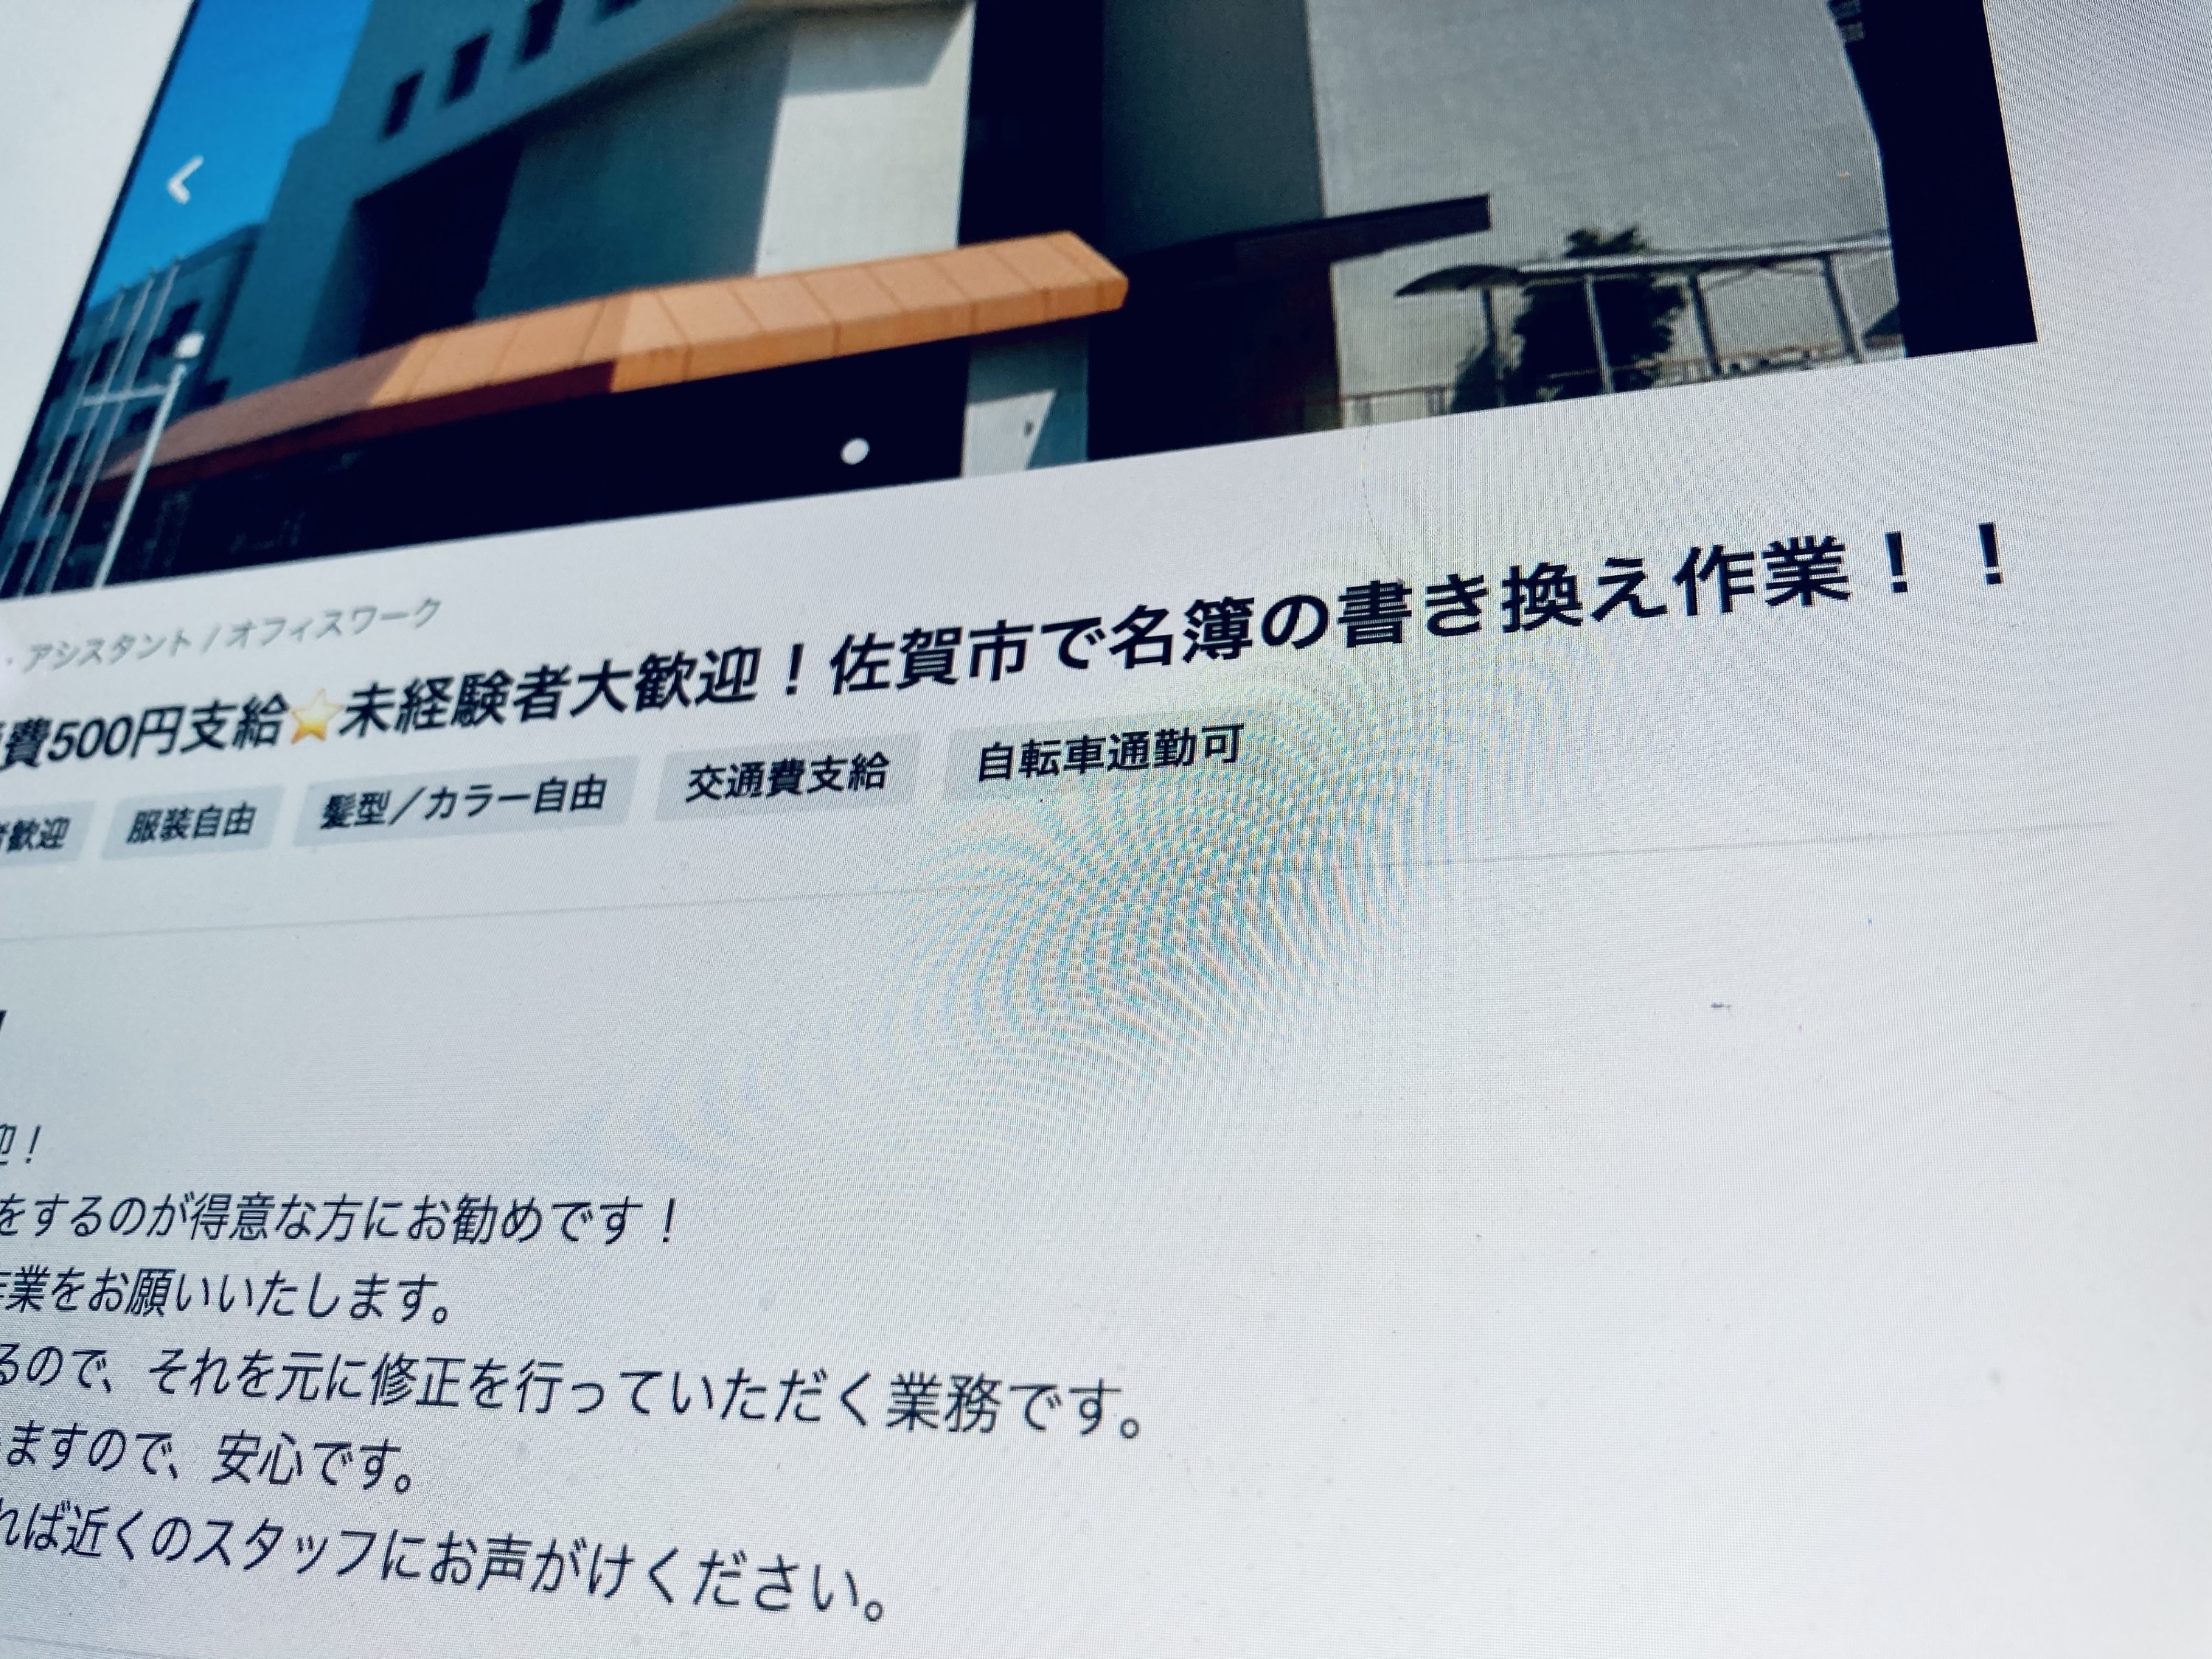 愛知県知事リコール署名の偽造疑惑 バイトを募集した企業の実態は